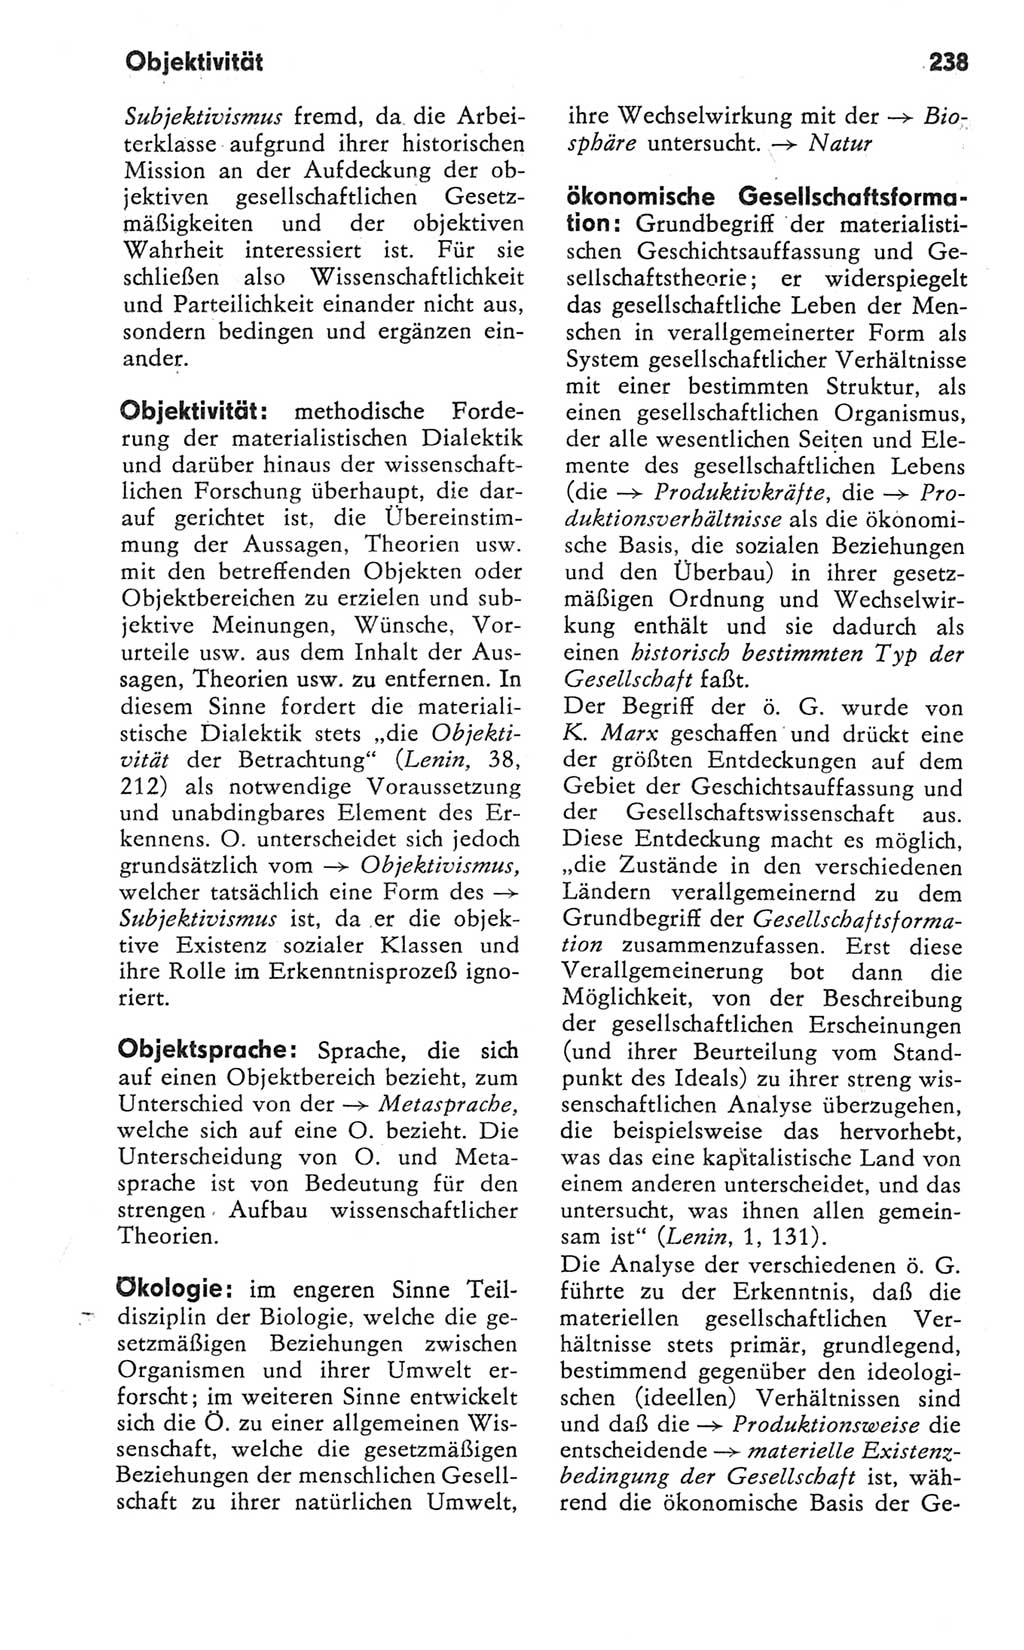 Kleines Wörterbuch der marxistisch-leninistischen Philosophie [Deutsche Demokratische Republik (DDR)] 1981, Seite 238 (Kl. Wb. ML Phil. DDR 1981, S. 238)